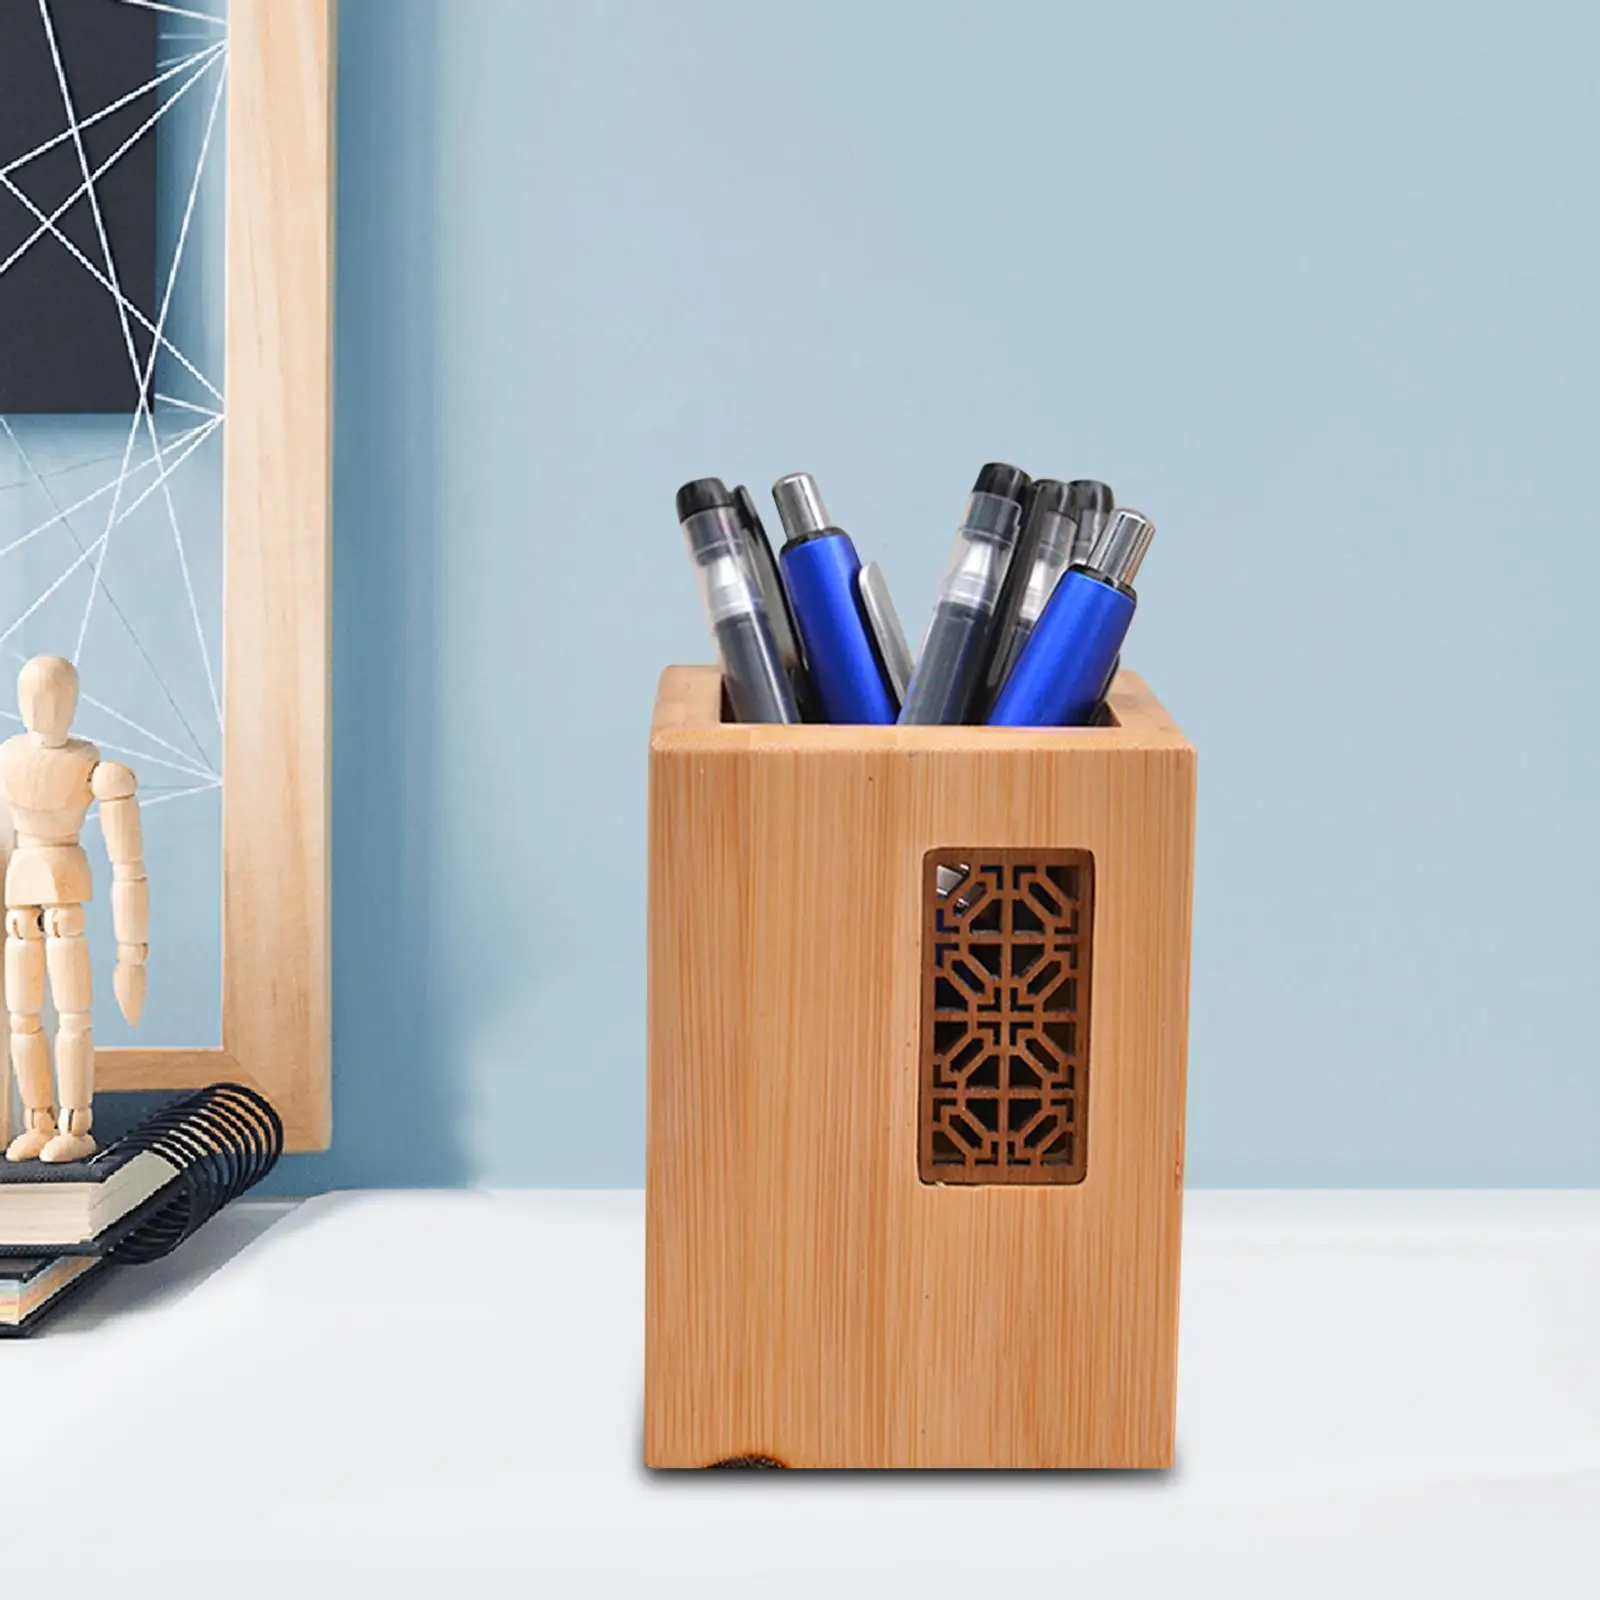 Desk Organizer Display Stand Paintbrush Cup Holder Table Desktop Wooden Pen Holder Pencil Holder for Home School Make up Brushes